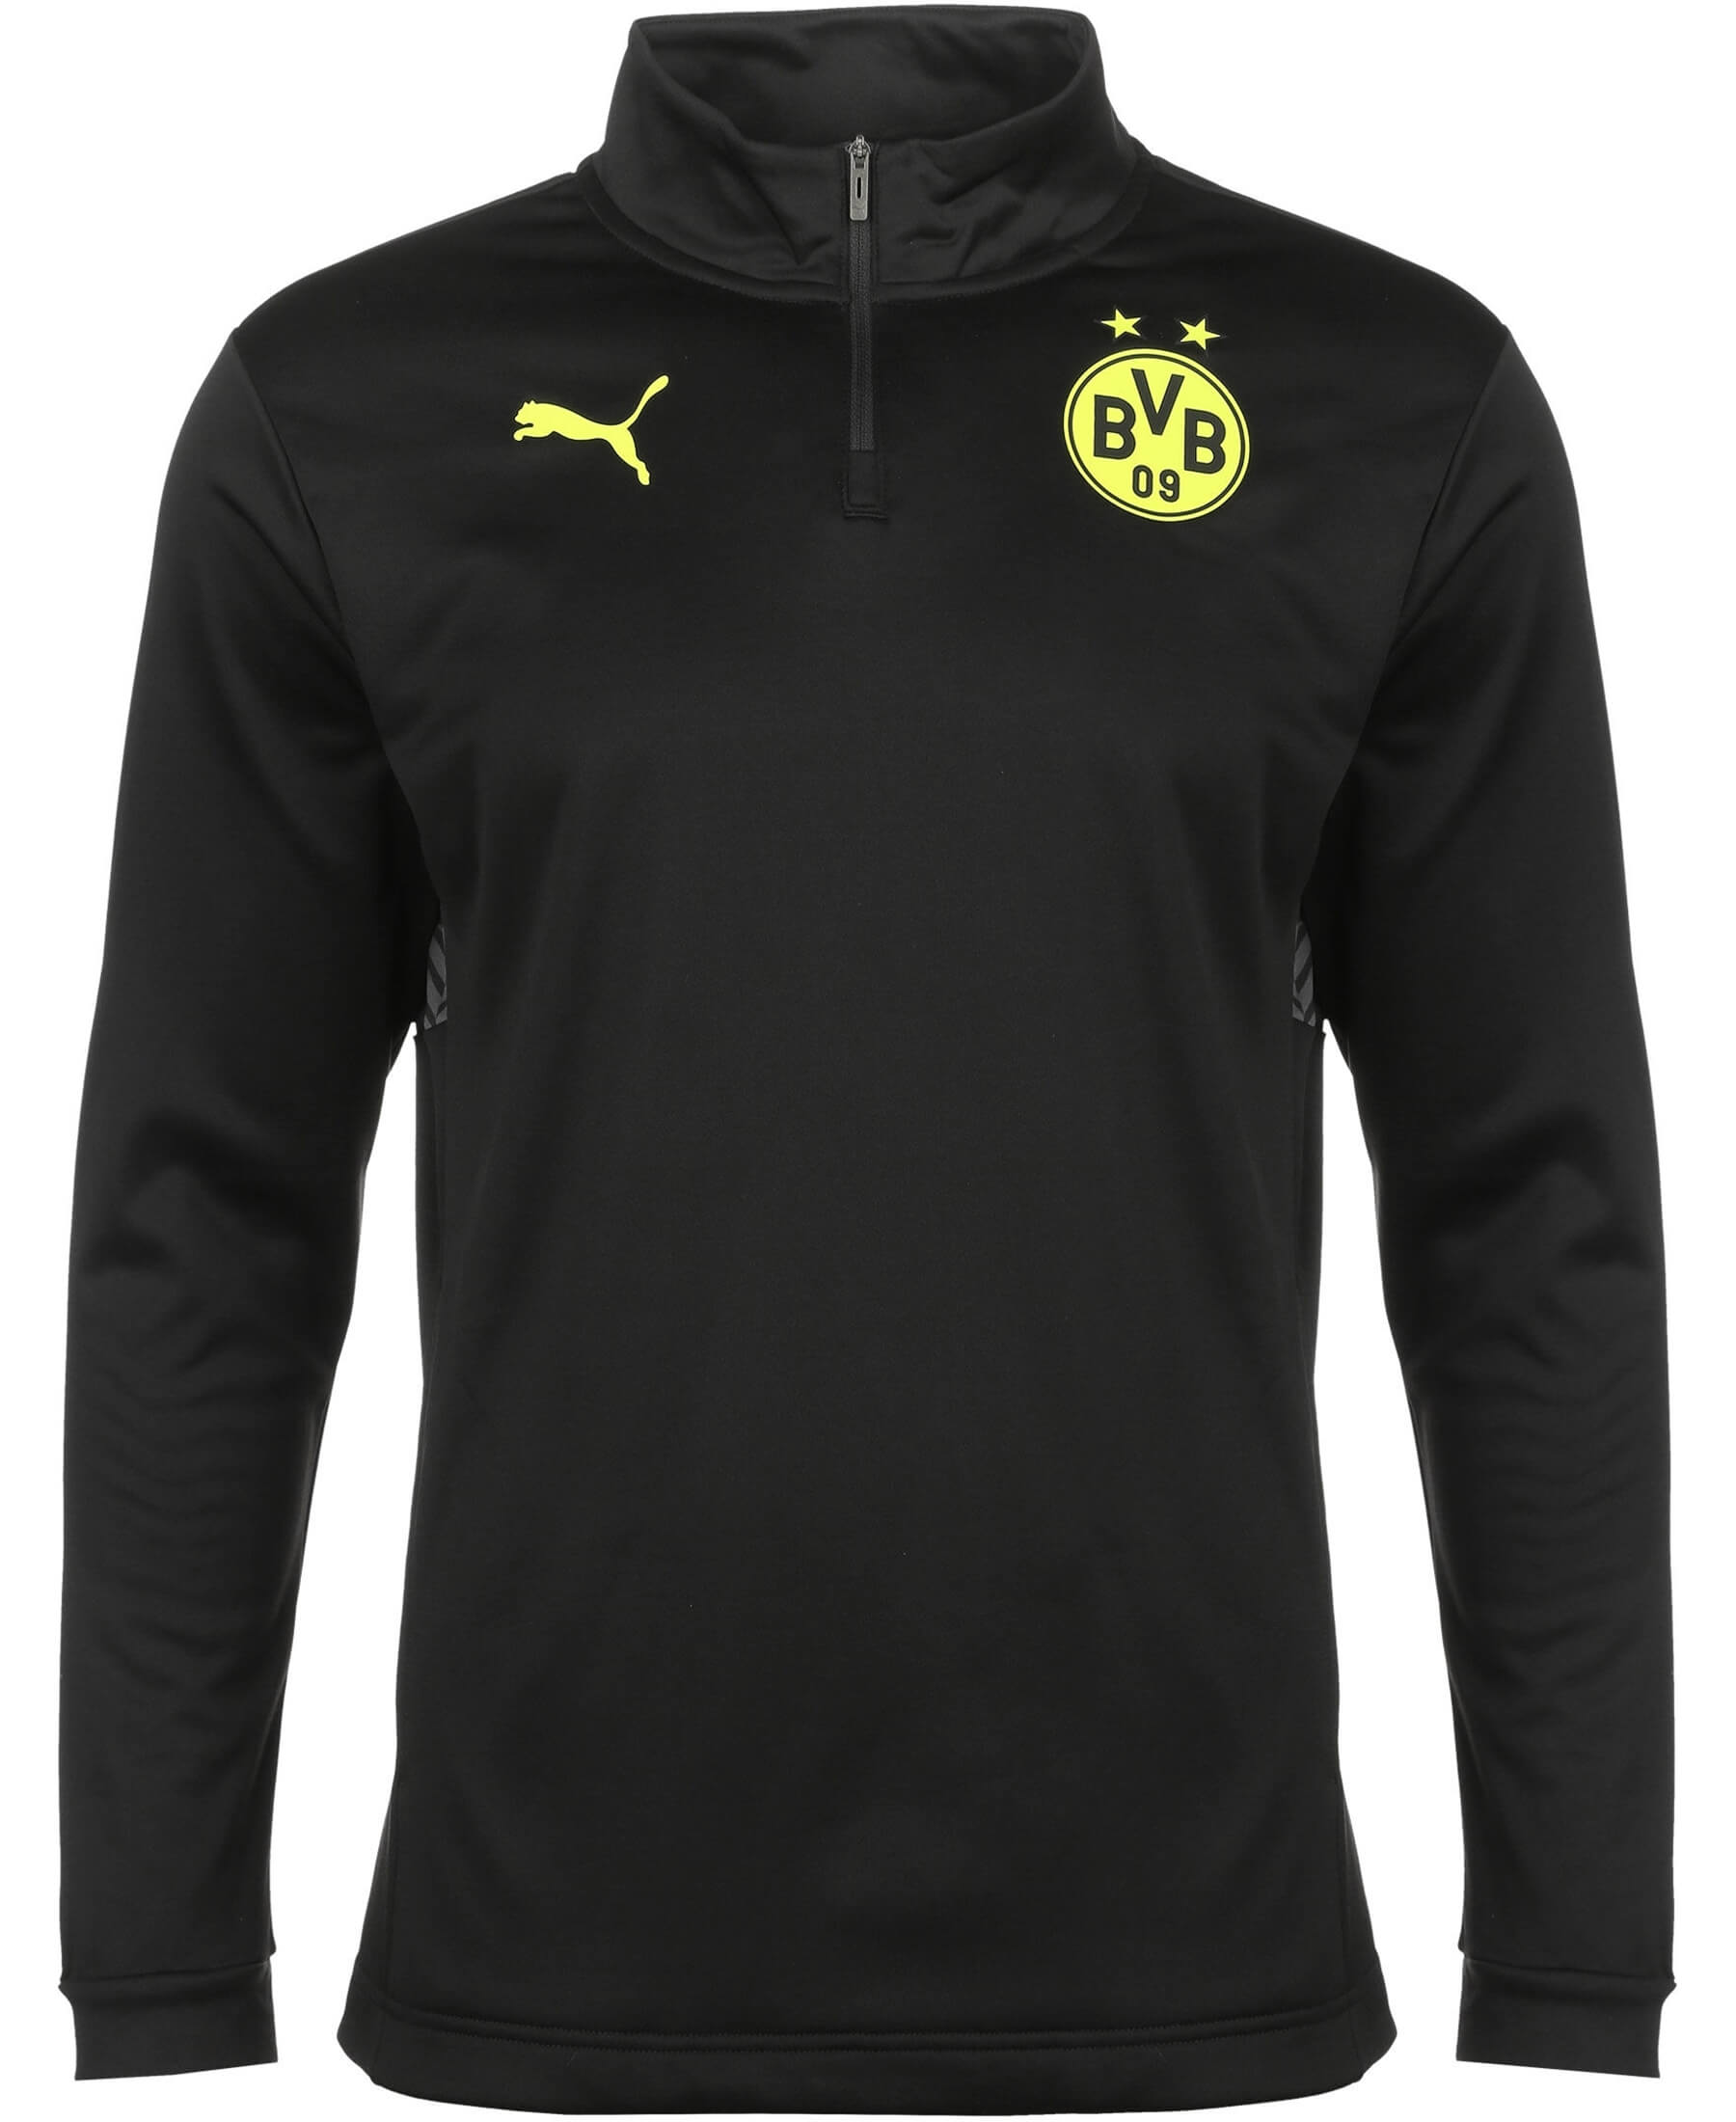 Erleben Sie das Borussia Dortmund BVB Pre-Match 1/4 Zip Sweat 2021-2022 in exklusivem Design. Offiziell lizenziert und mit Vereinslogo, verströmt es Teamstolz. Das hochwertige Material bietet Tragekomfort und Langlebigkeit. Ein moderner Schnitt und der Viertelreißverschluss ergänzen den Style. Entdecken Sie bei SHOP4TEAMSPORT die Leidenschaft des BVB in einem Sweatshirt für Spieltage und Freizeit. Unterstützen Sie Ihr Team stilvoll und authentisch.